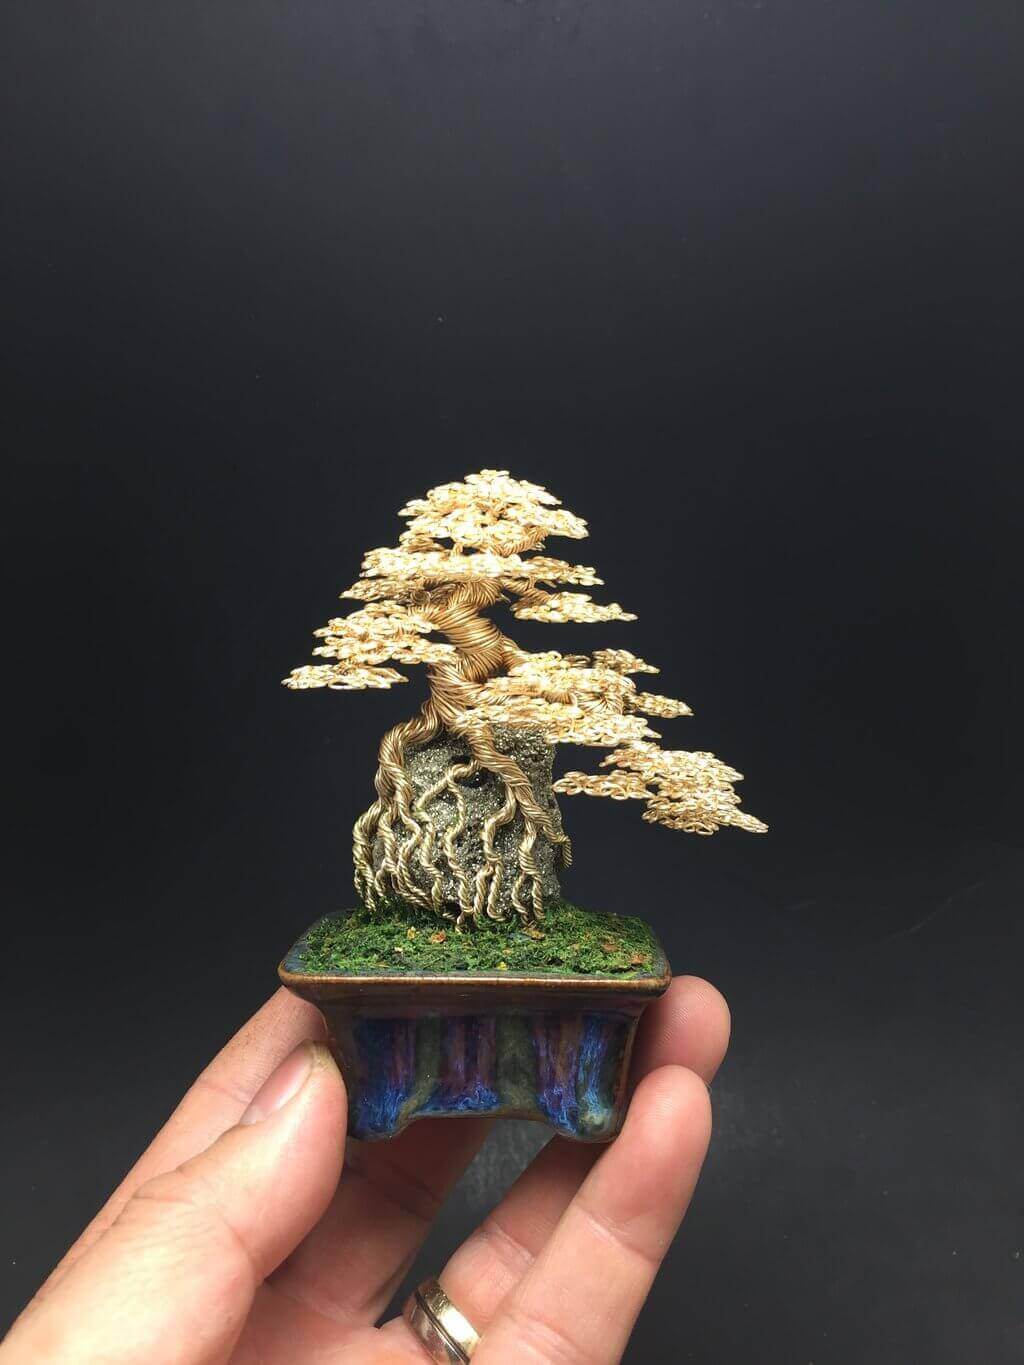 уникальные, искусственные мини-деревья в стилистике бонсай